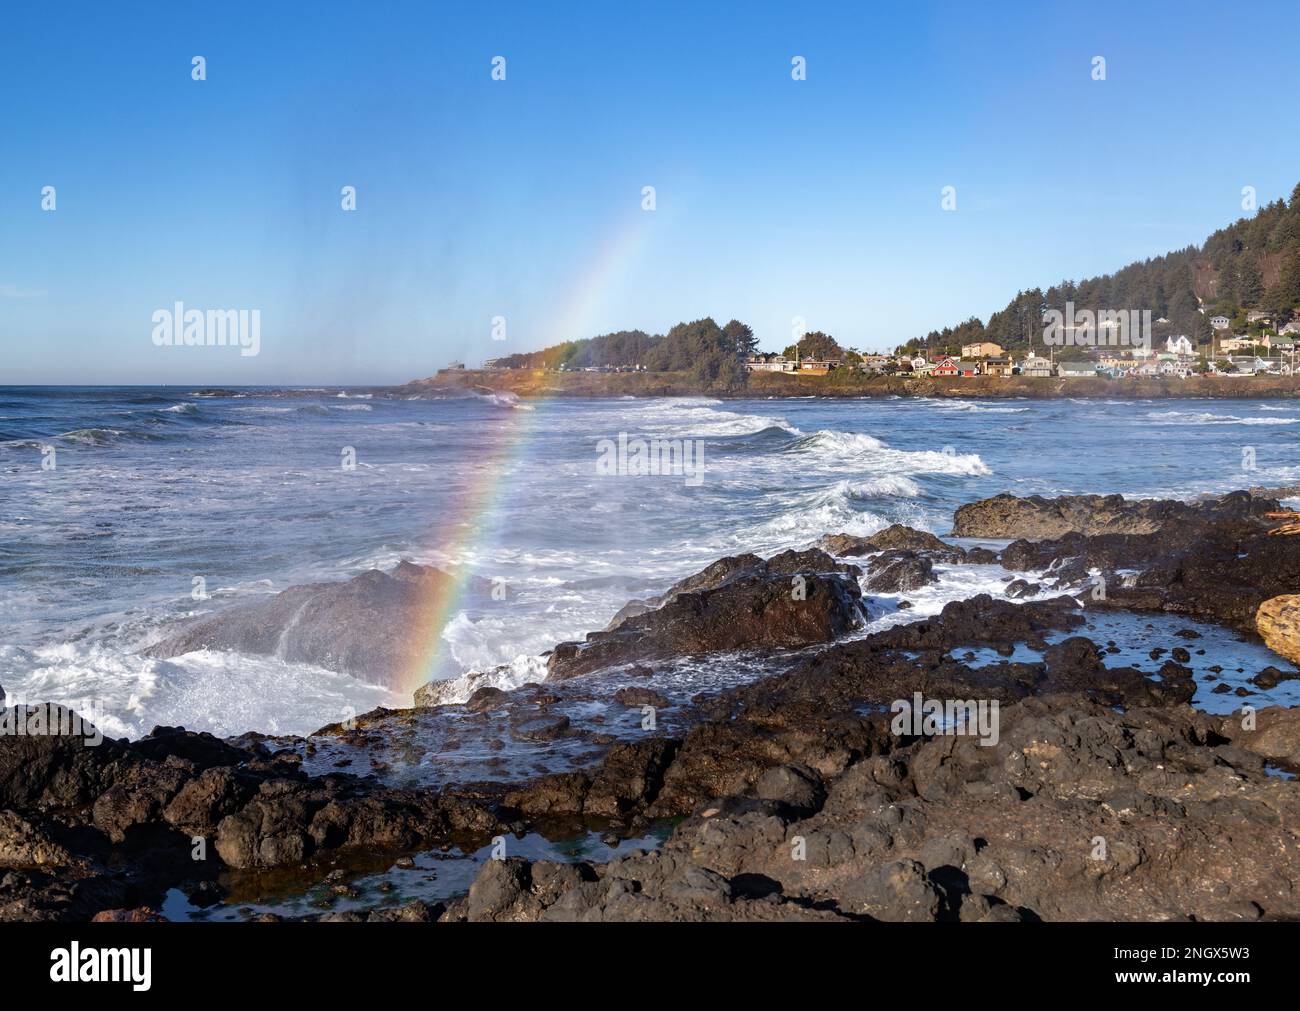 La ciudad de Oregon de Yachats en el fondo, con un arco iris en el primer plano, formado por la refracción de la luz del sol en la niebla de un cuerno de chorro Foto de stock